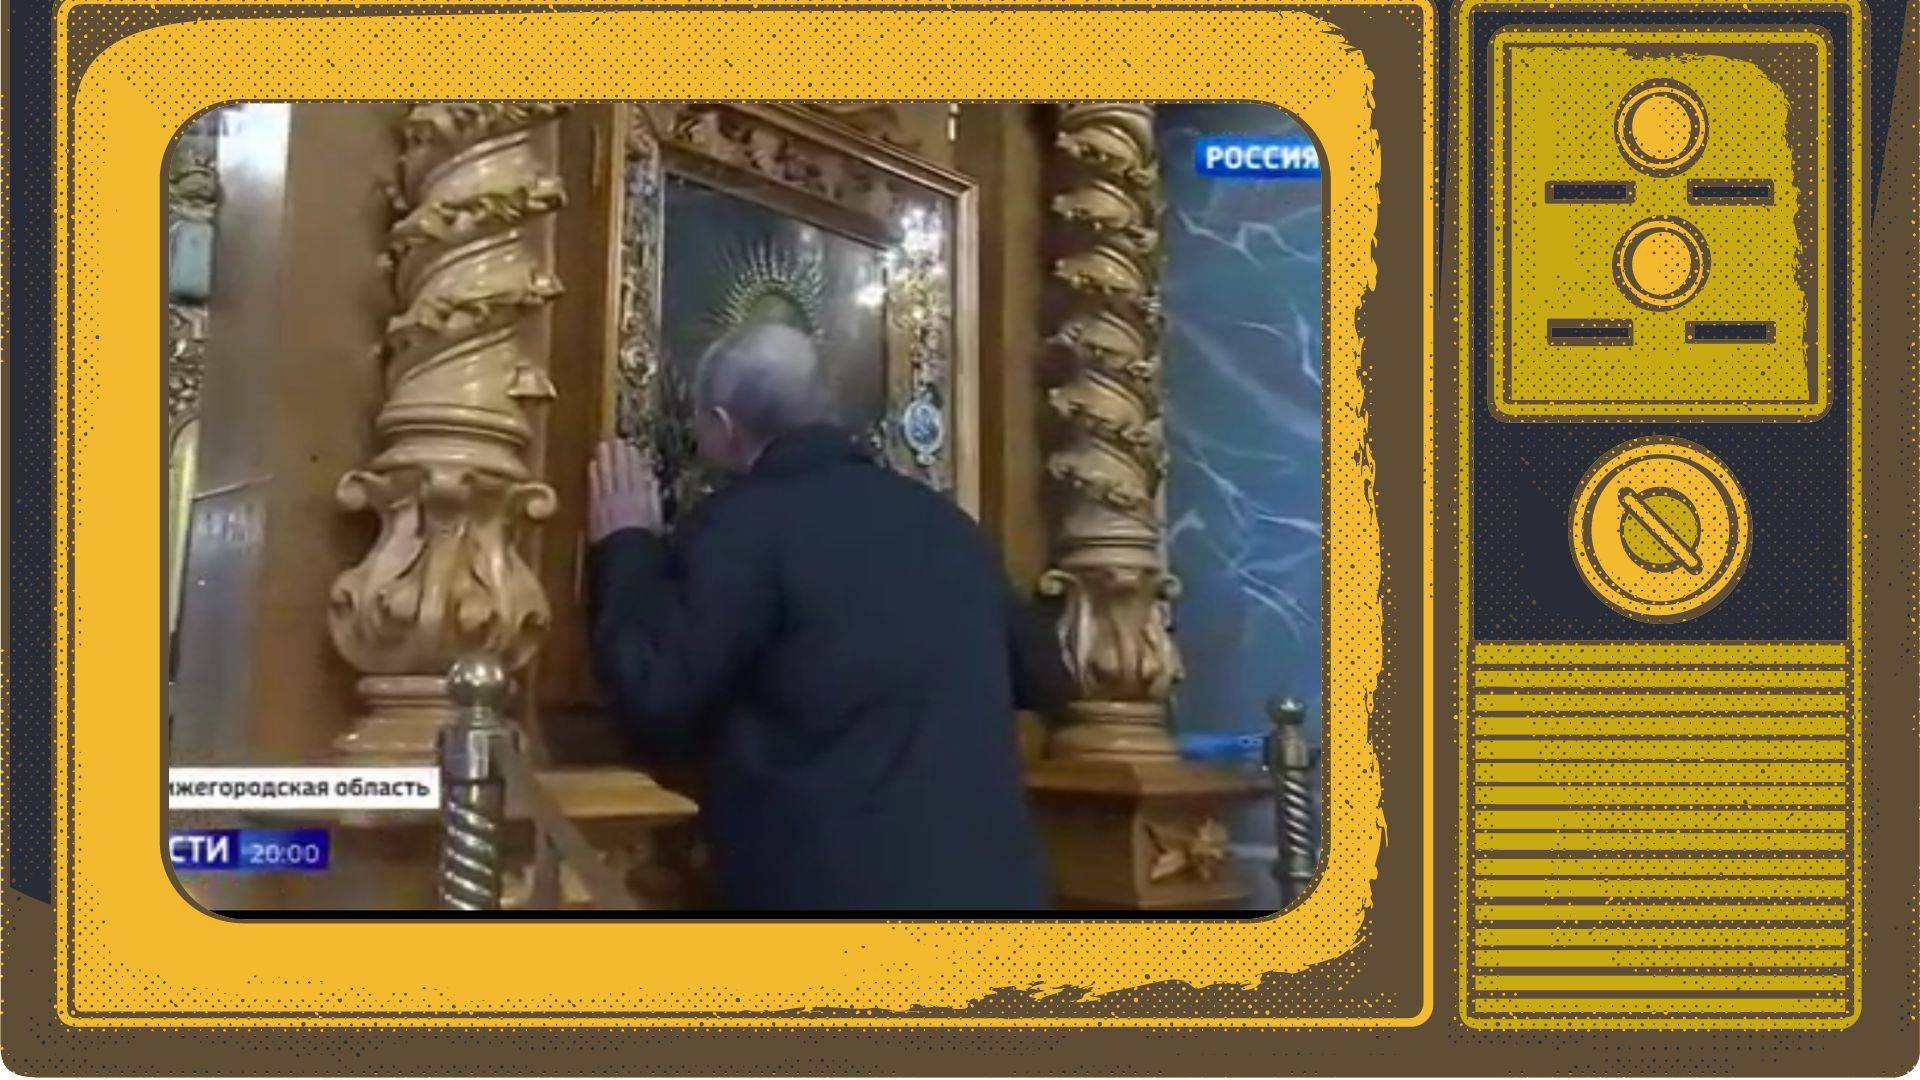 Grafika: w ramce starego telewizora zdjęcie Putina całującego ikonę w cerkwi